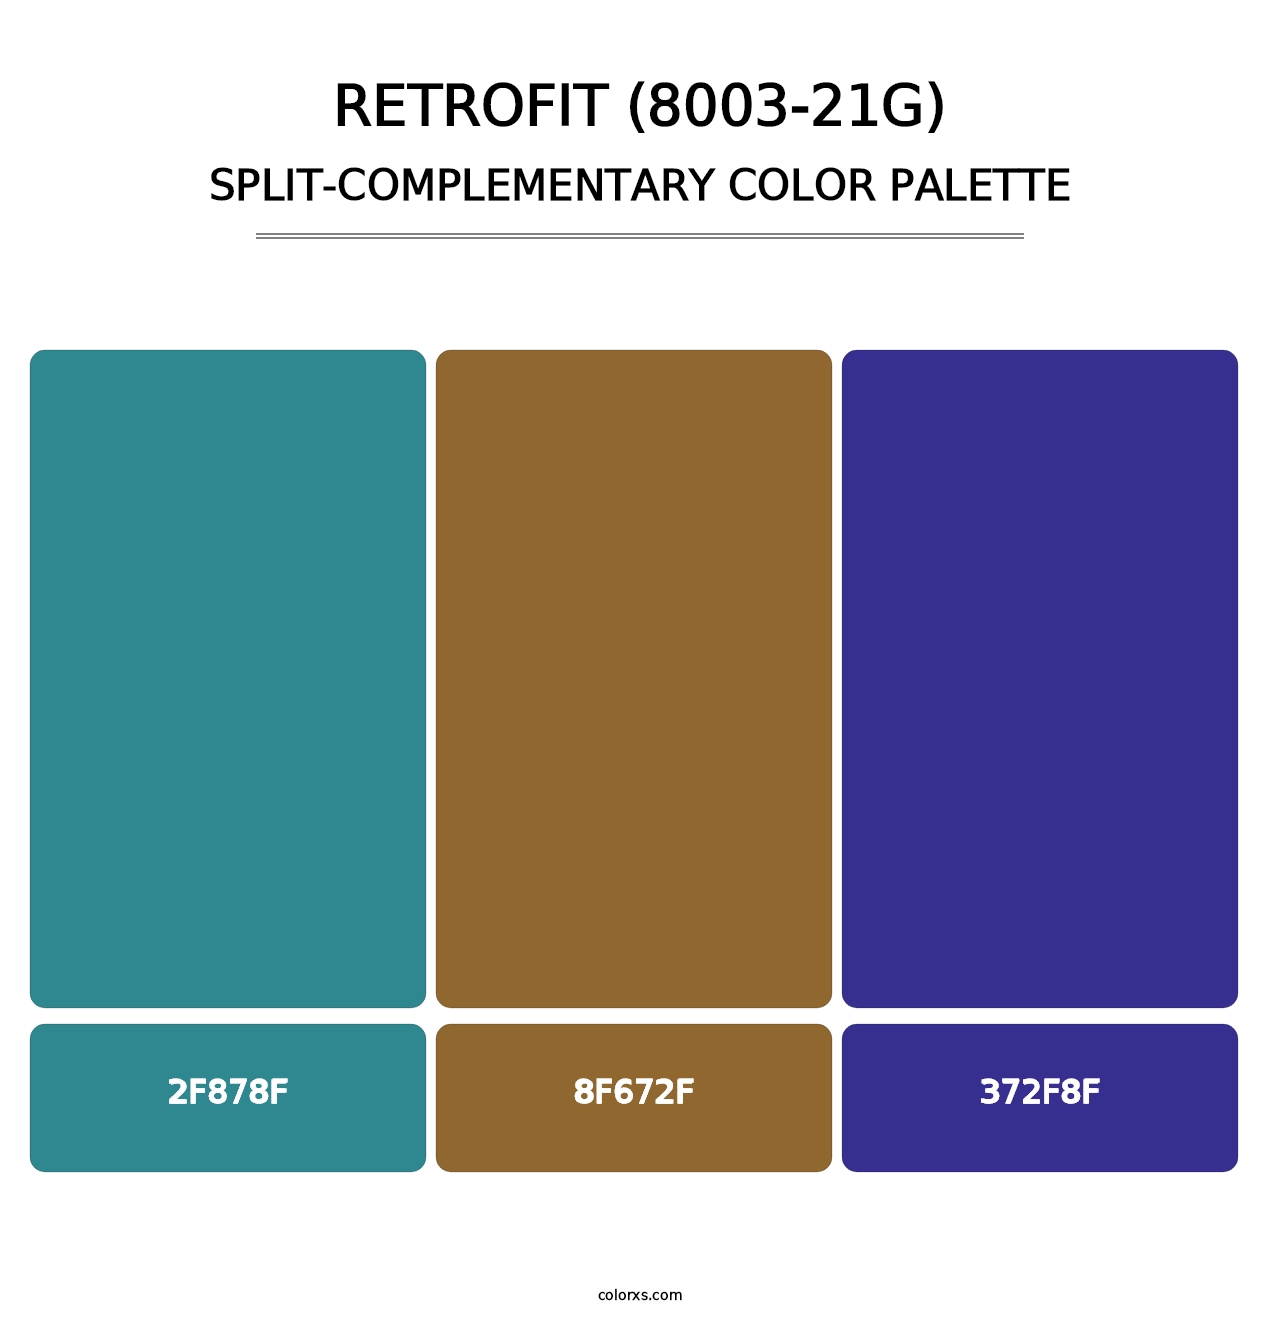 Retrofit (8003-21G) - Split-Complementary Color Palette